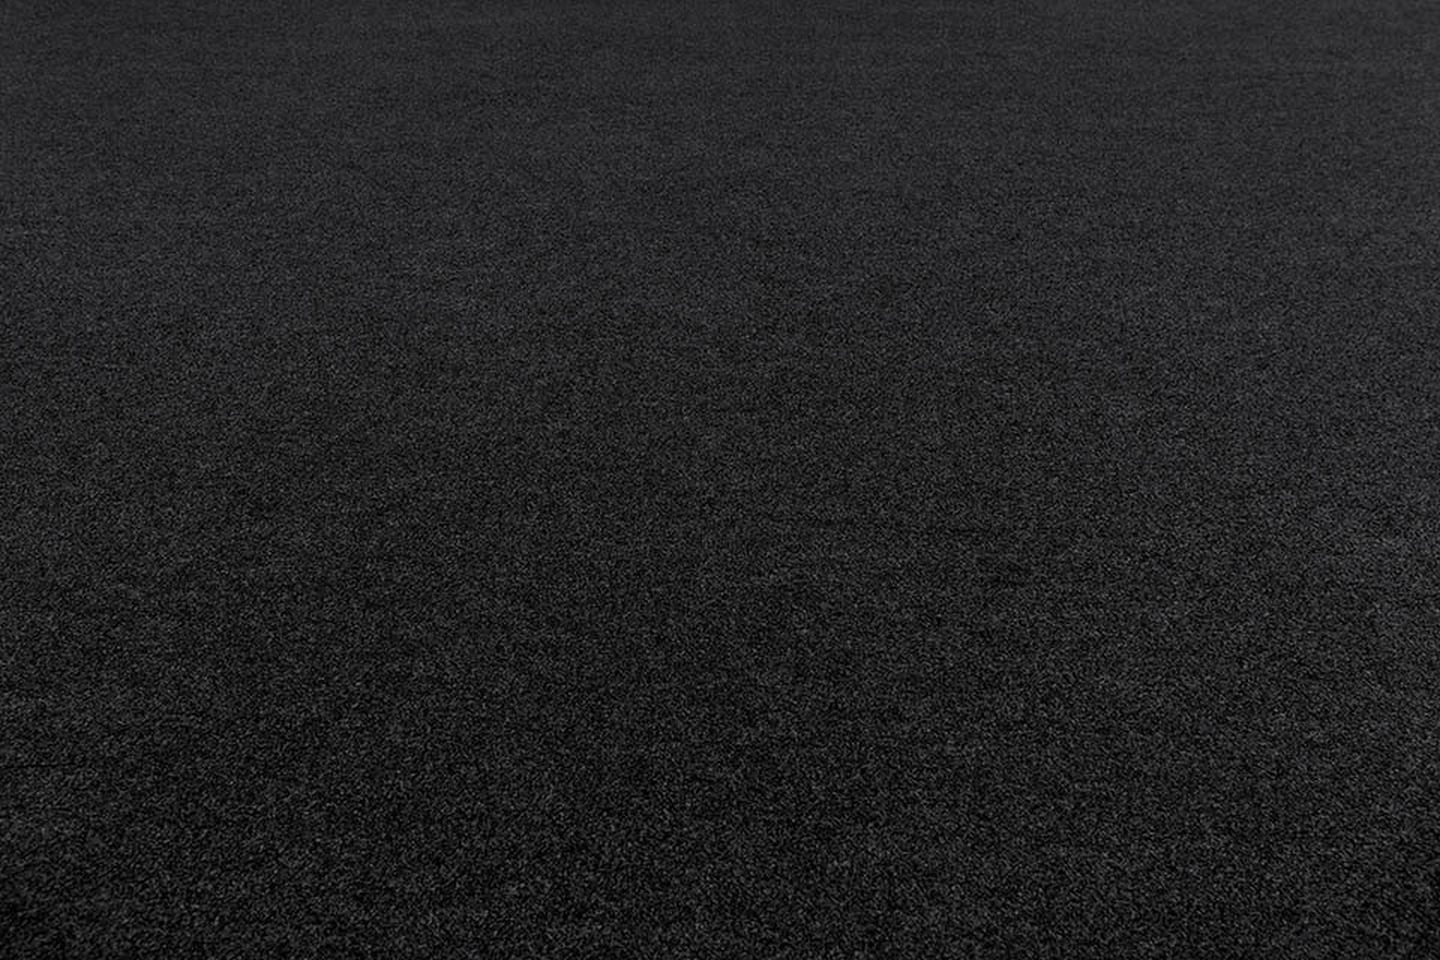 Metrážový koberec DESIRE černý